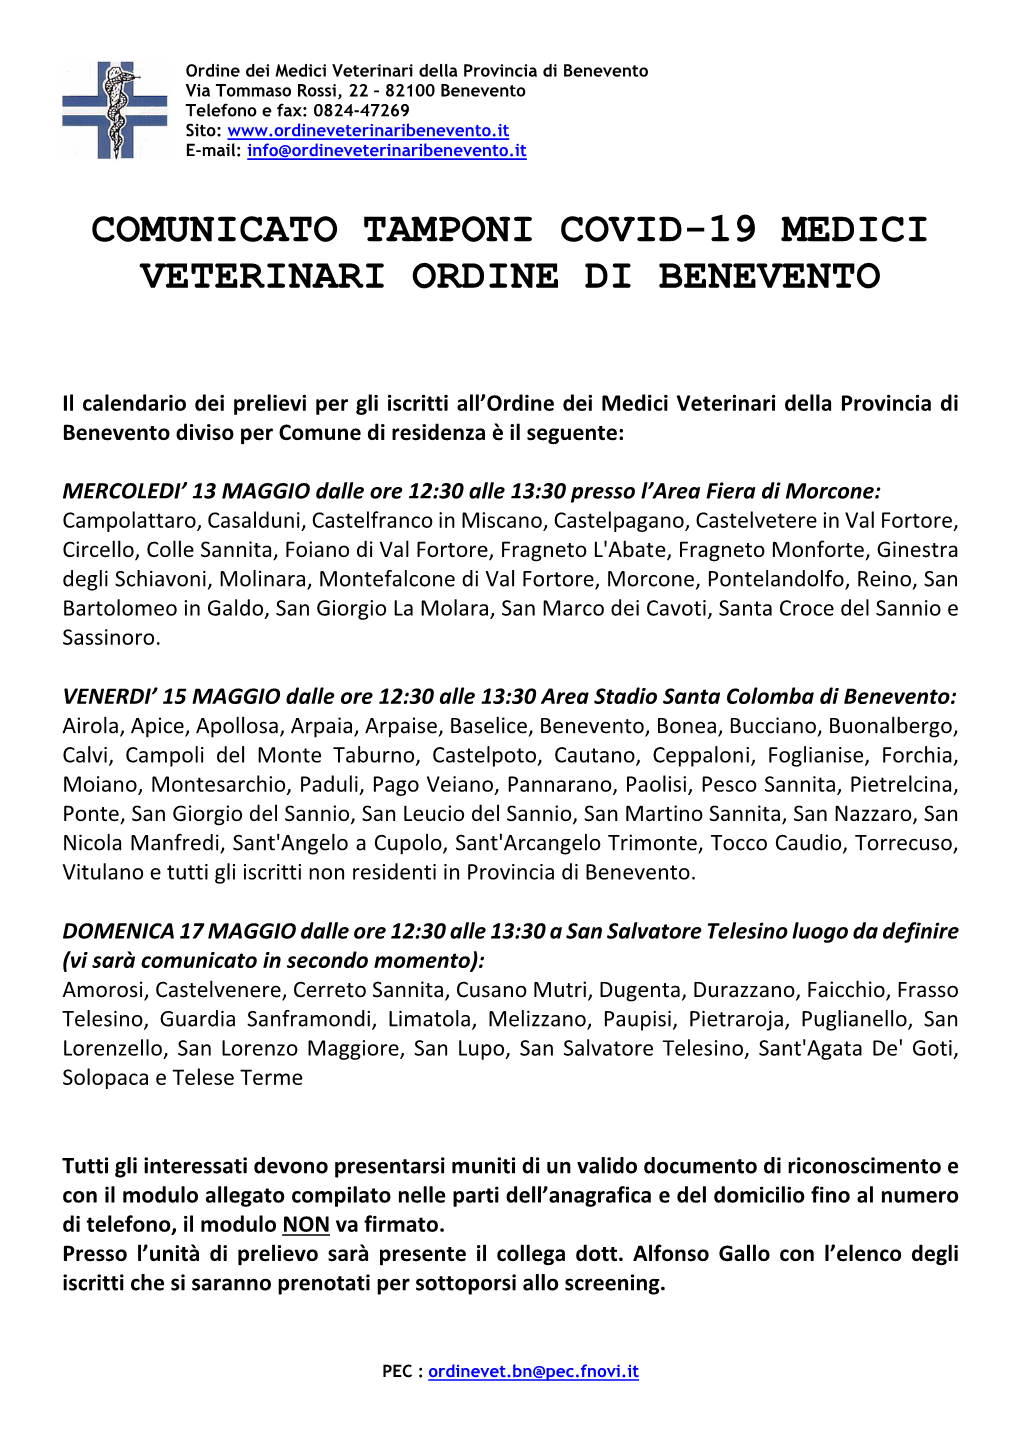 Comunicato Tamponi Covid-19 Medici Veterinari Ordine Di Benevento